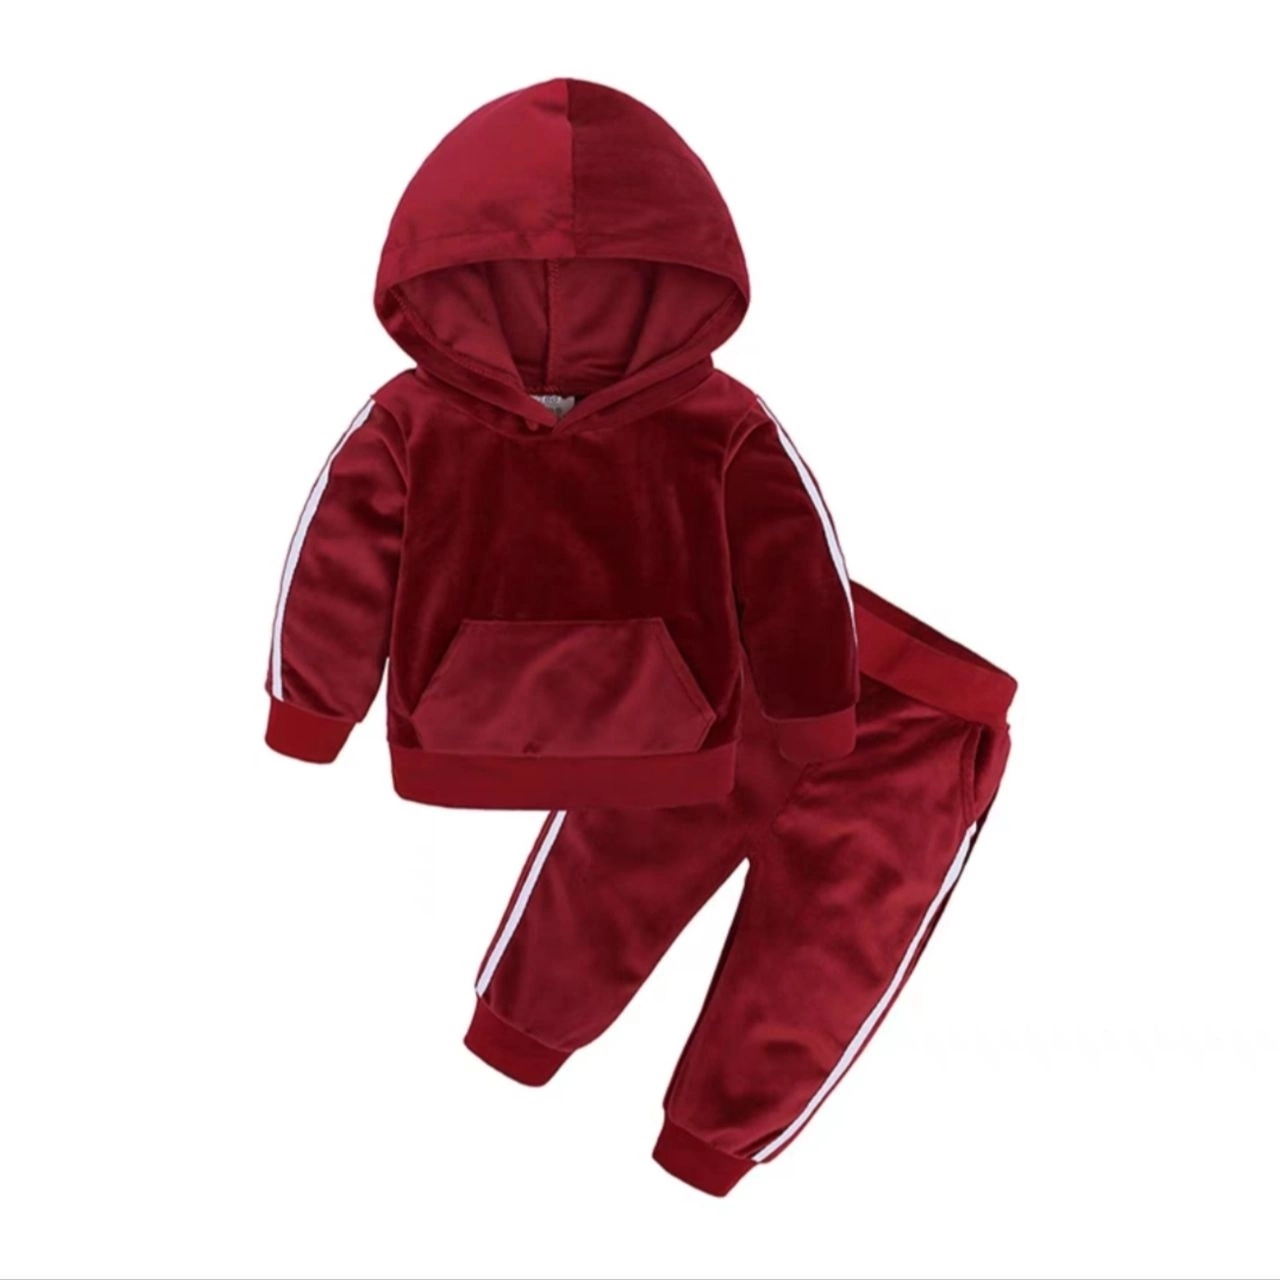 Дитячий велюровий костюм з вушками счервоний для хлопчика та дівчинки від 2 до 9 років